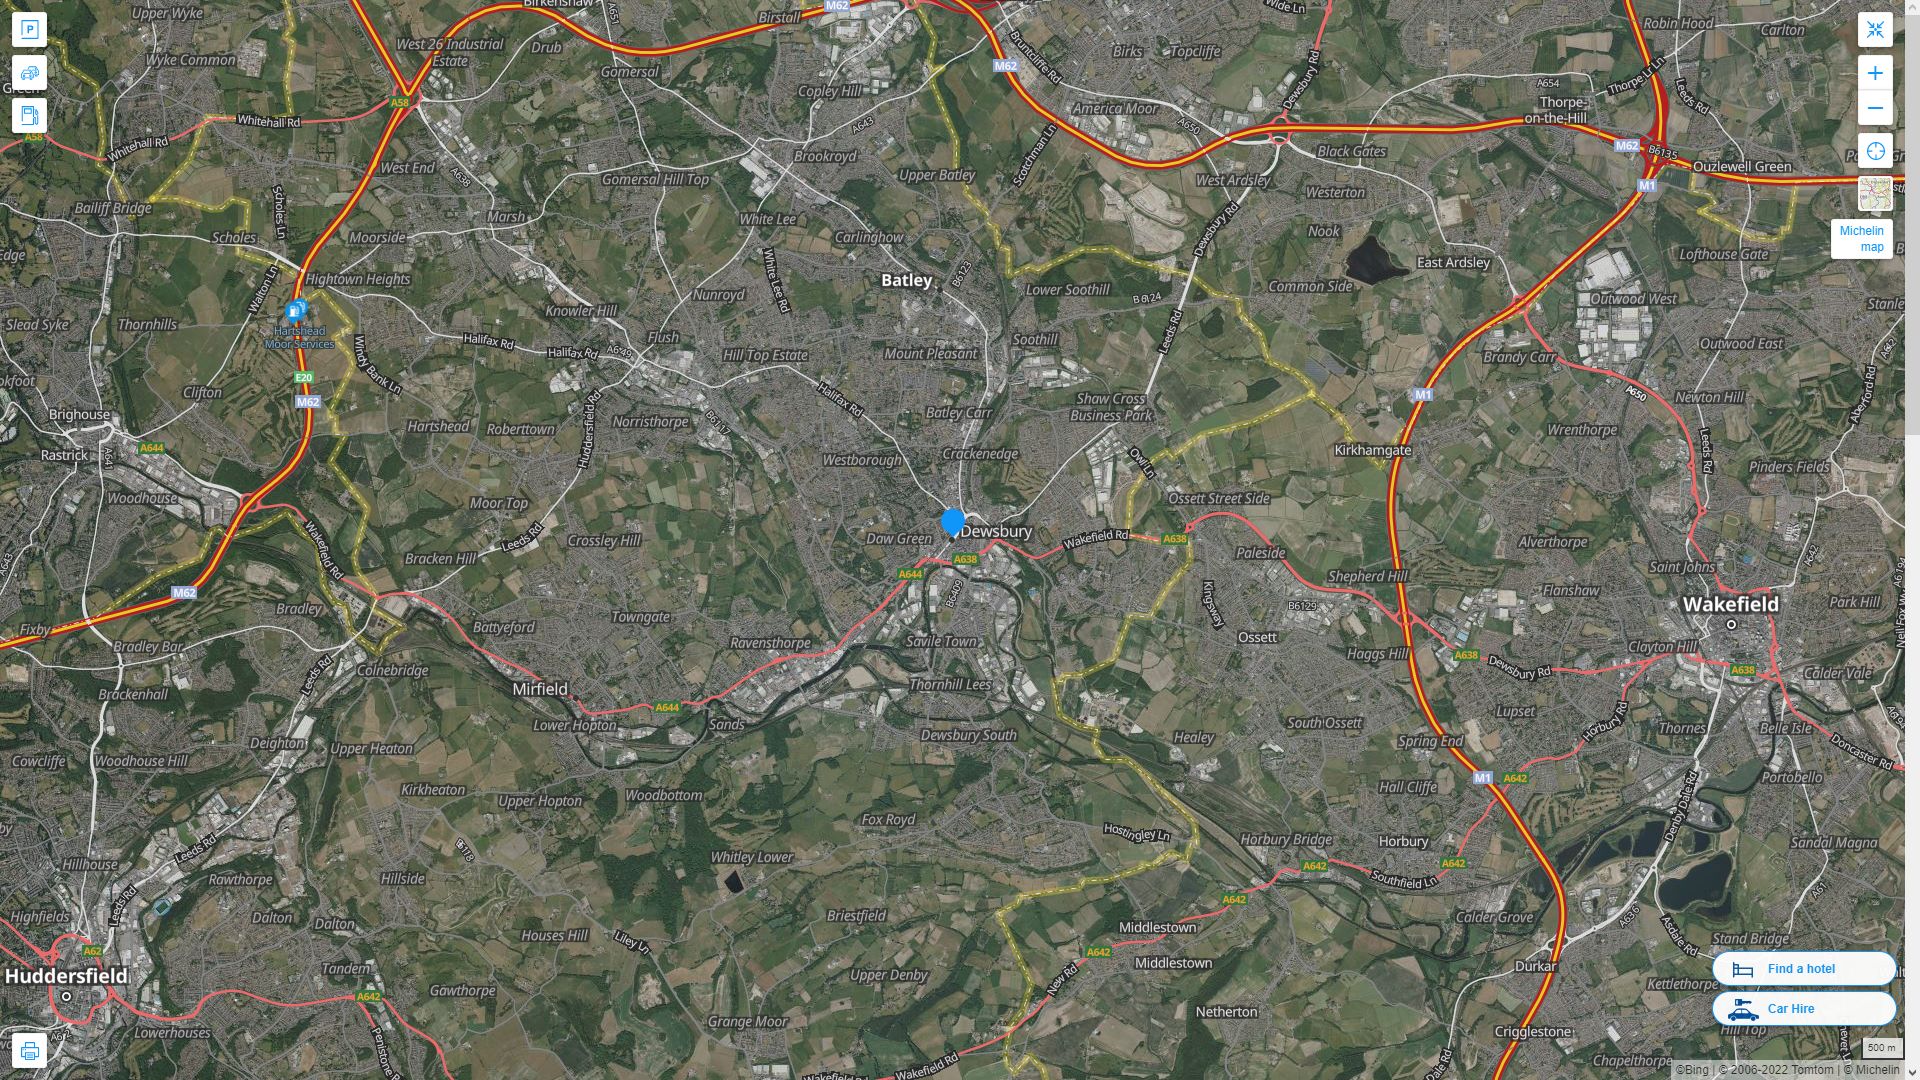 Dewsbury Royaume Uni Autoroute et carte routiere avec vue satellite